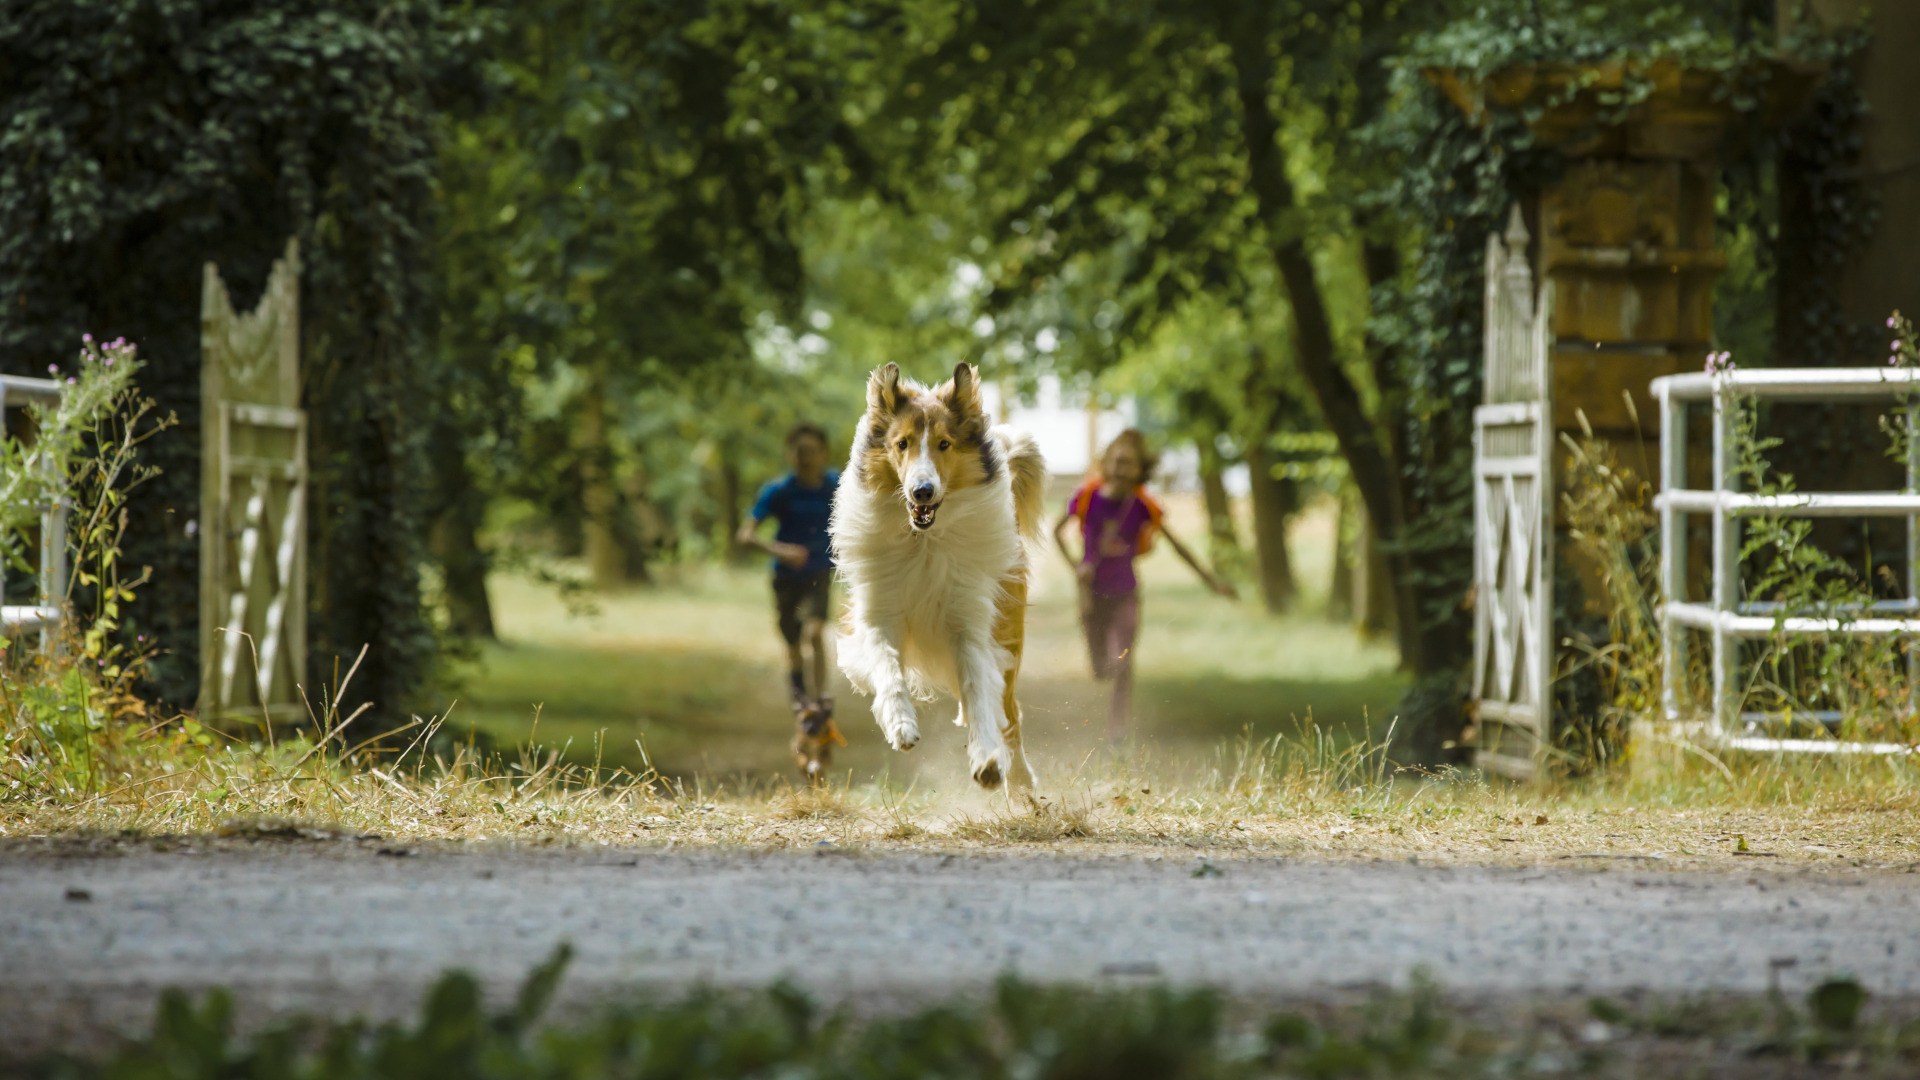 Filmstill aus Lassie. Lassie, der Hund, läuft durch ein Einfahrtstor. Zwei Kinder rennen hinterher.